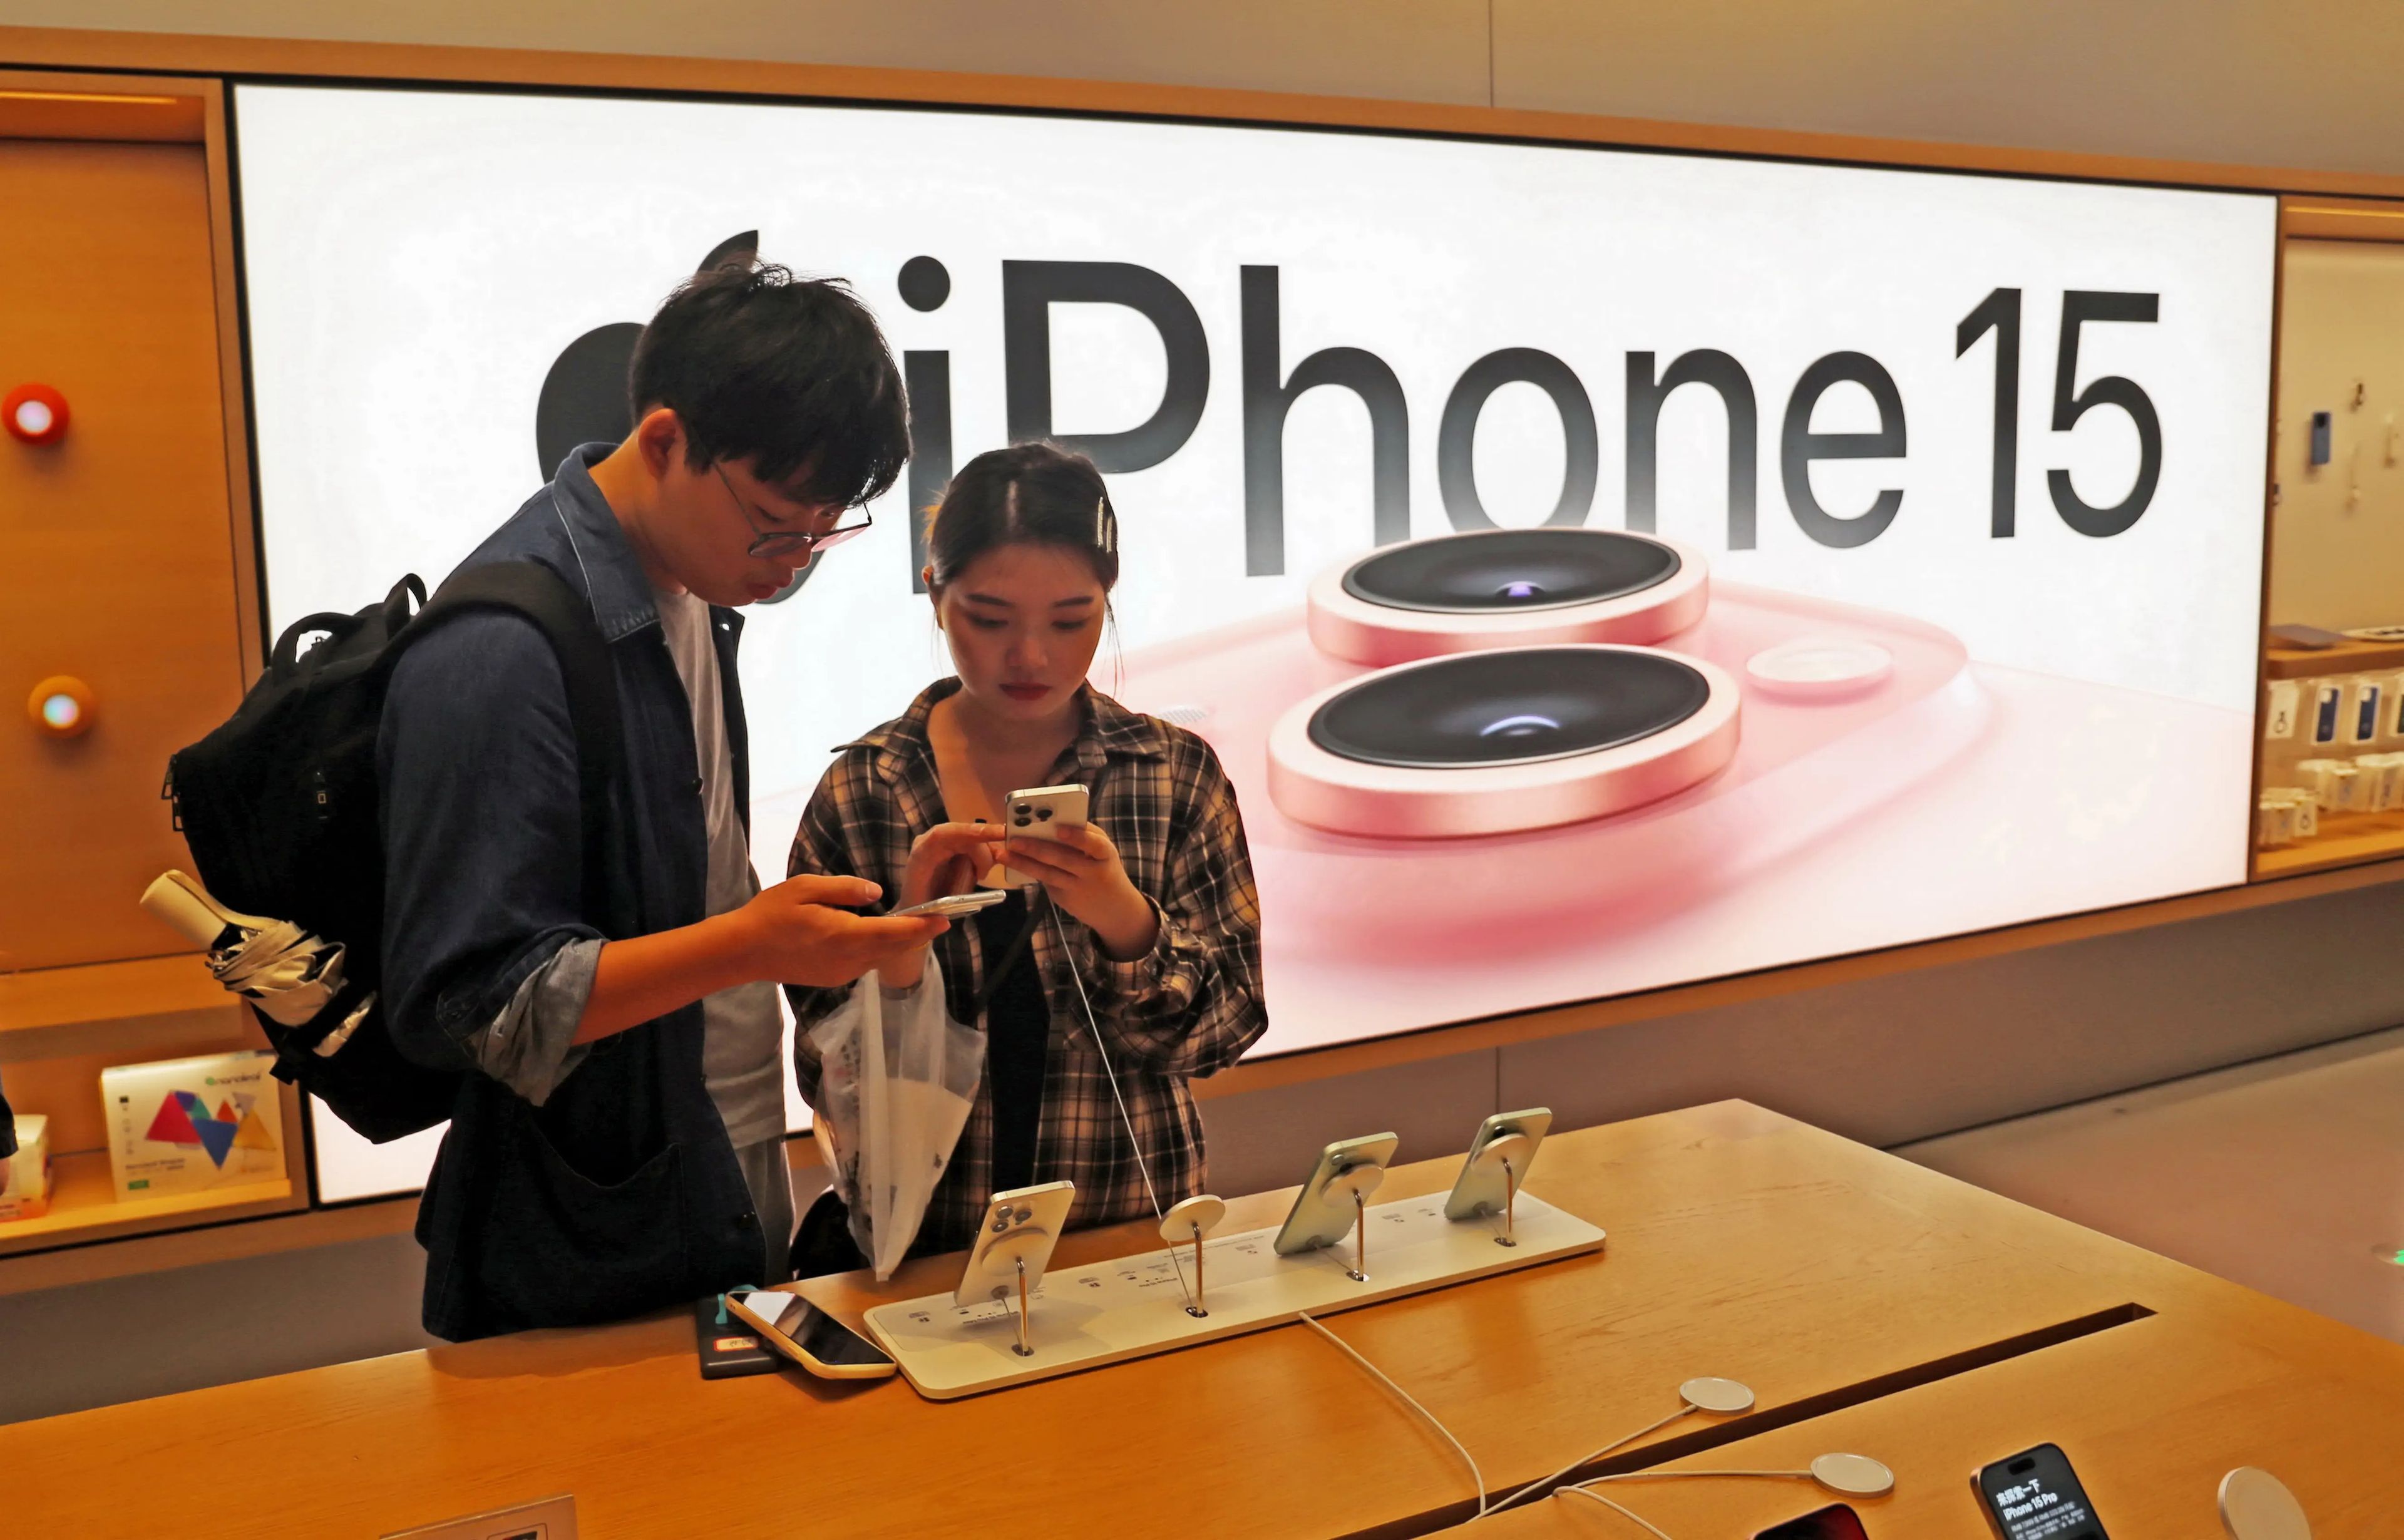 Clientes probando el iPhone 15 de Apple en una tienda Apple de Shanghái, China.